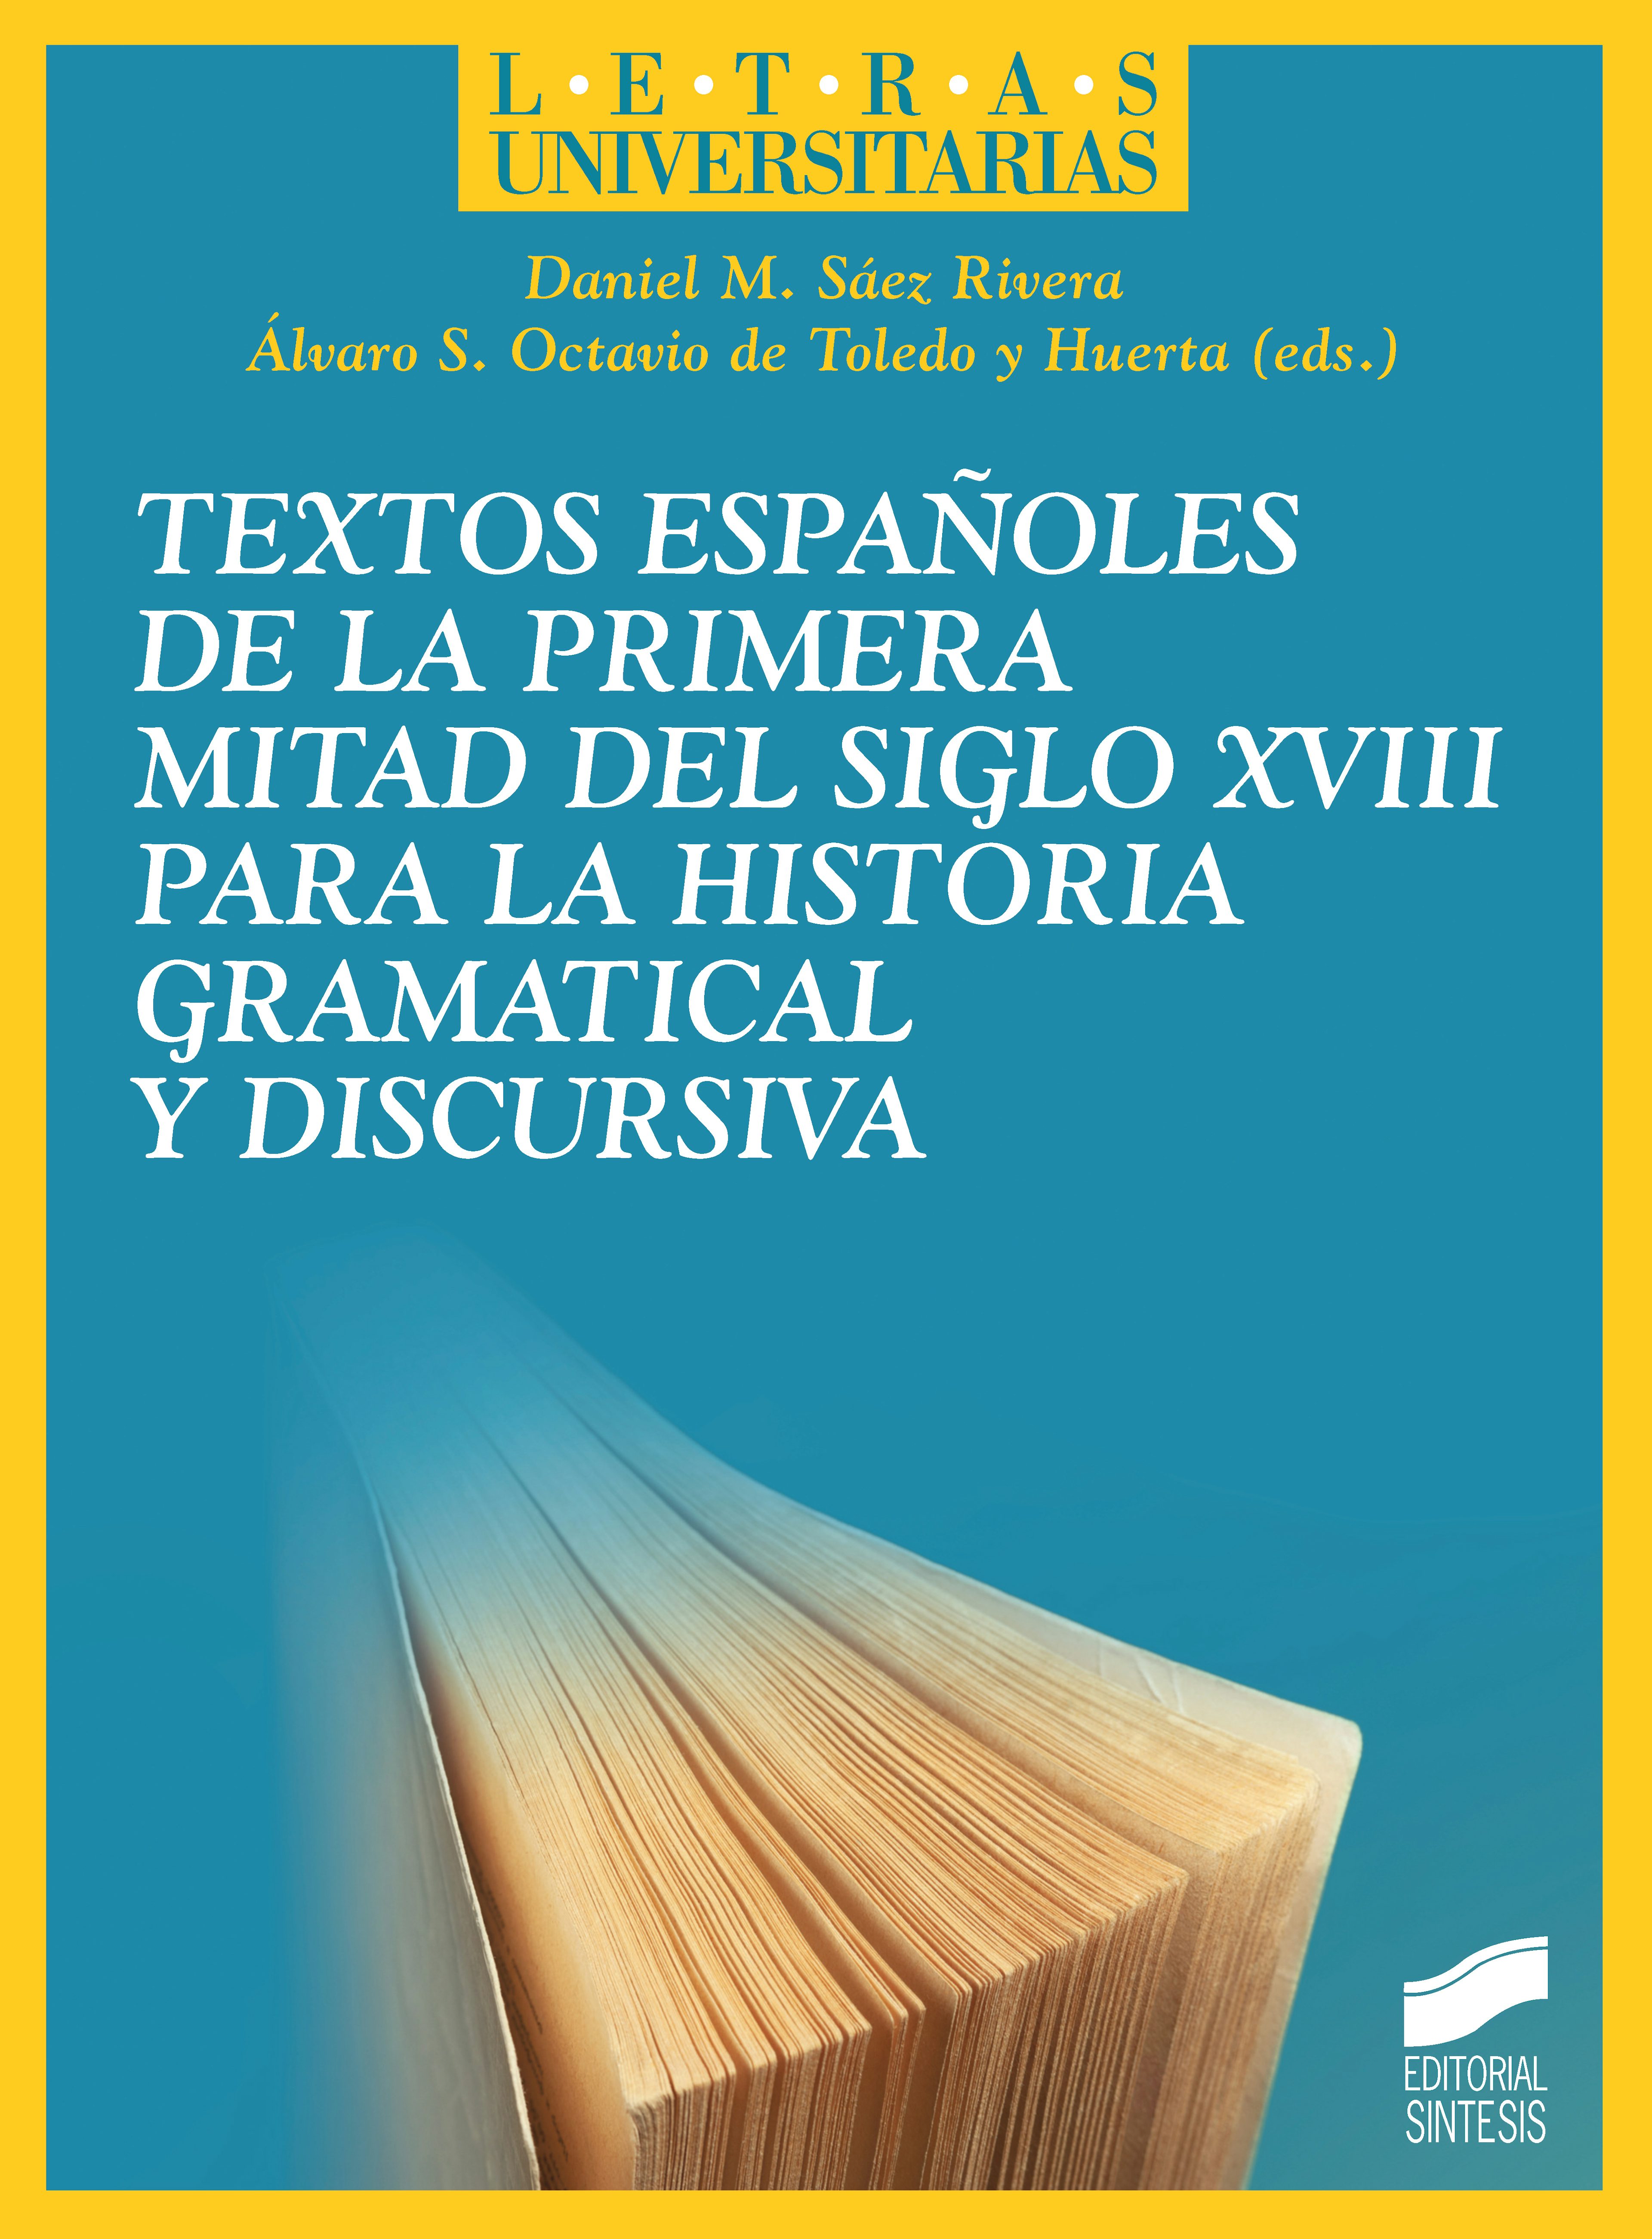 Portada del título textos españoles de la primera mitad del siglo xviii para la historia gramatical y discursiva